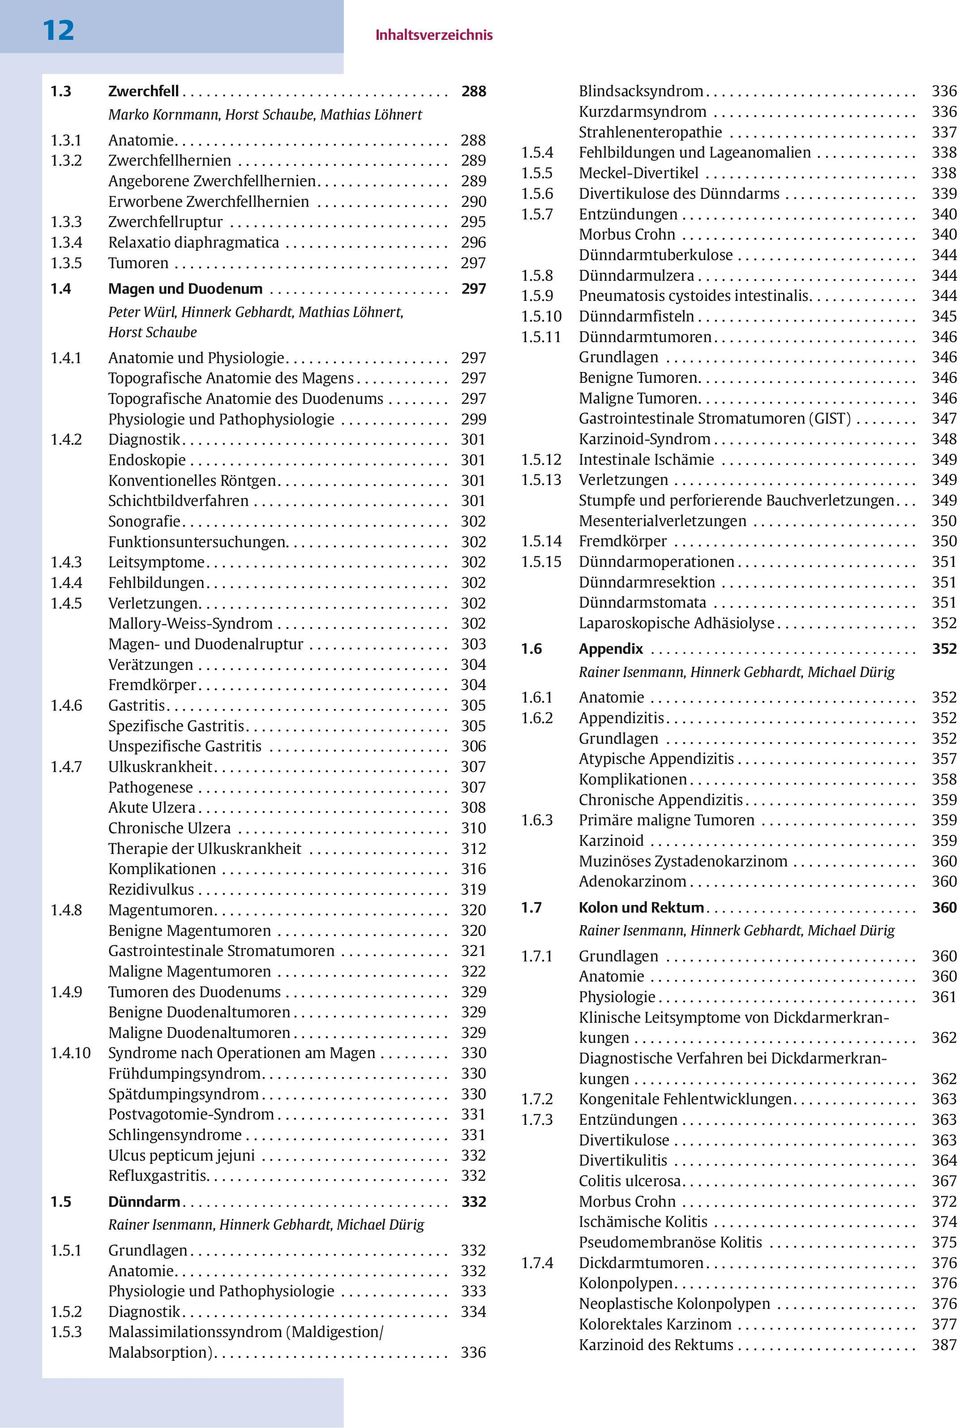 .. 297 Peter Würl, Hinnerk Gebhardt, Mathias Löhnert, Horst Schaube 1.4.1 Anatomie und Physiologie.... 297 Topografische Anatomie des Magens... 297 Topografische Anatomie des Duodenums.